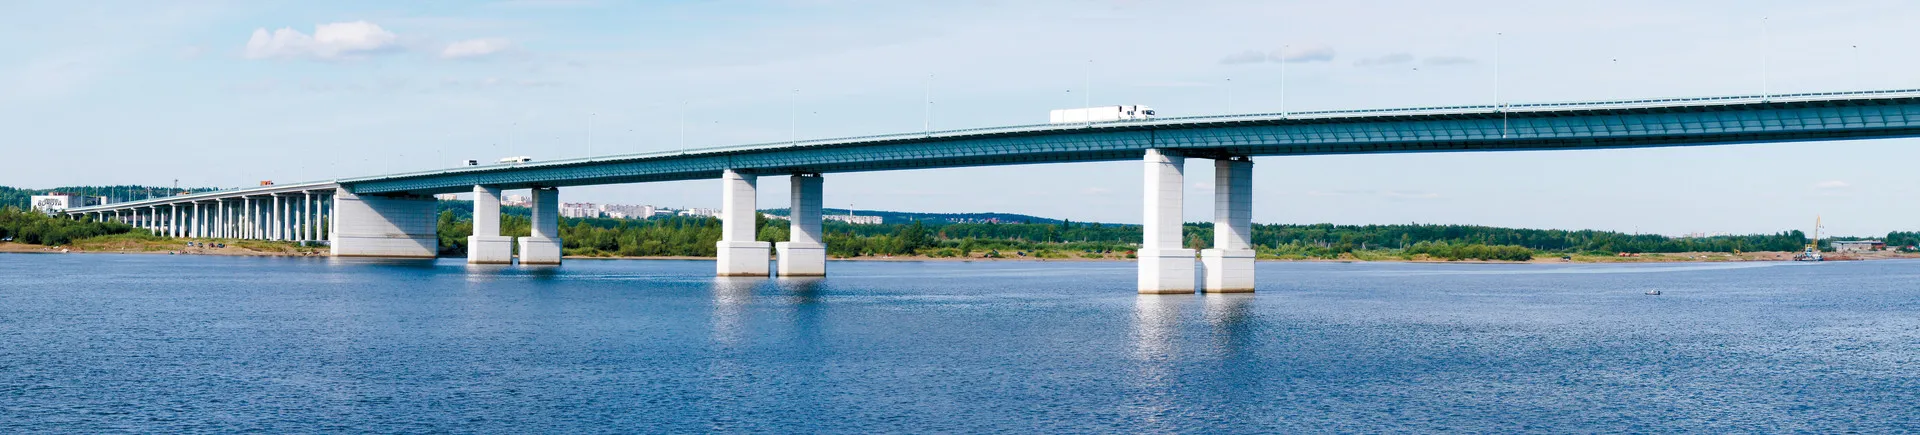 Красавинский автомобильный мост. Построен в 2005 году. Это самый большой мост в Пермском крае и третий по длине в России. Его открытие позволило транзитному транспорту объезжать город по западной окраине / The Krasavinsky Automobile Bridge